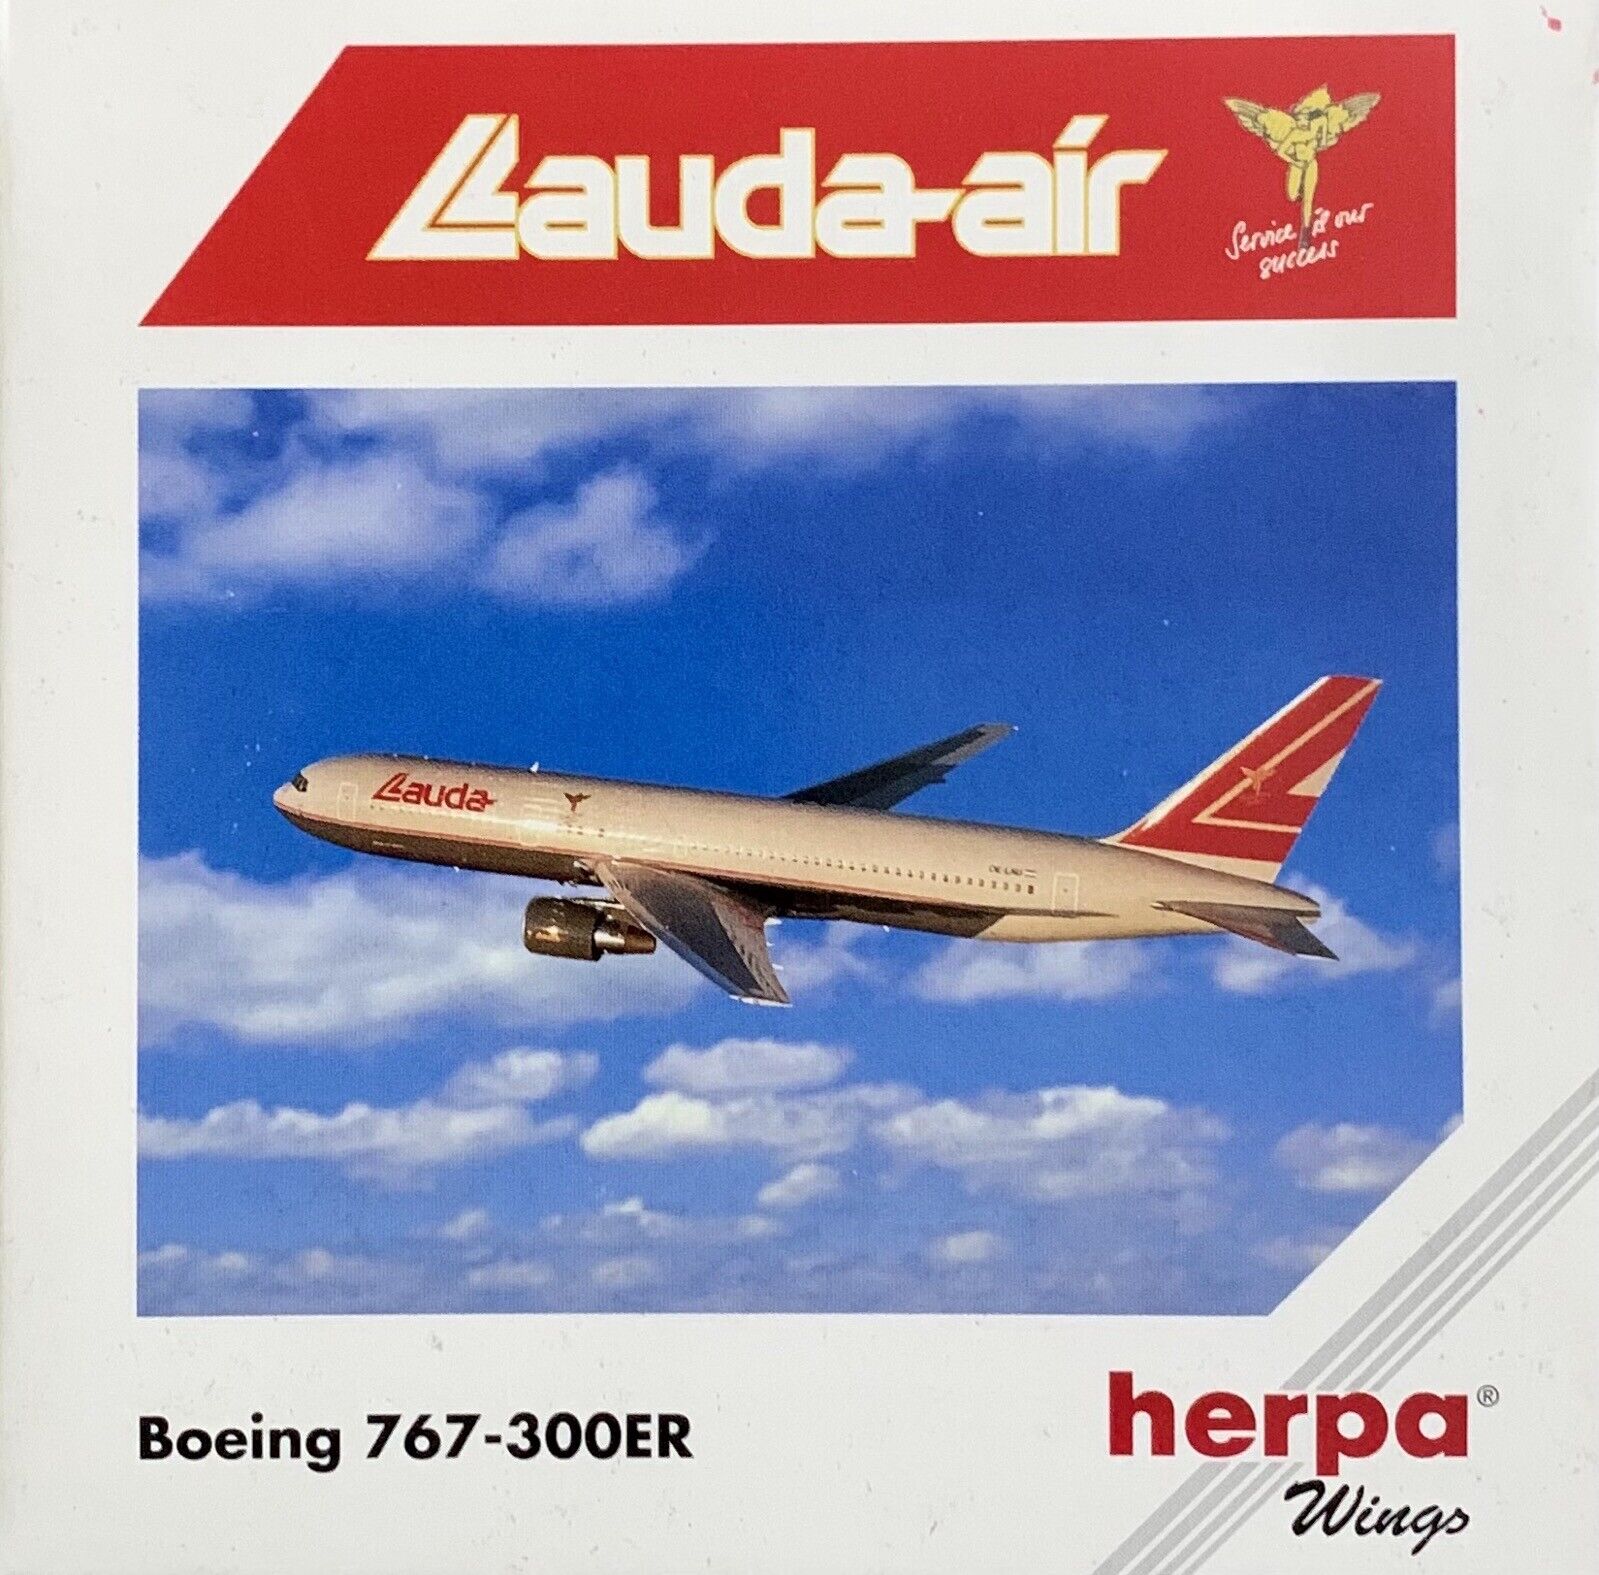 Herpa Wings Lauda Air Boeing 767-300ER Scale 1:500 HE502856